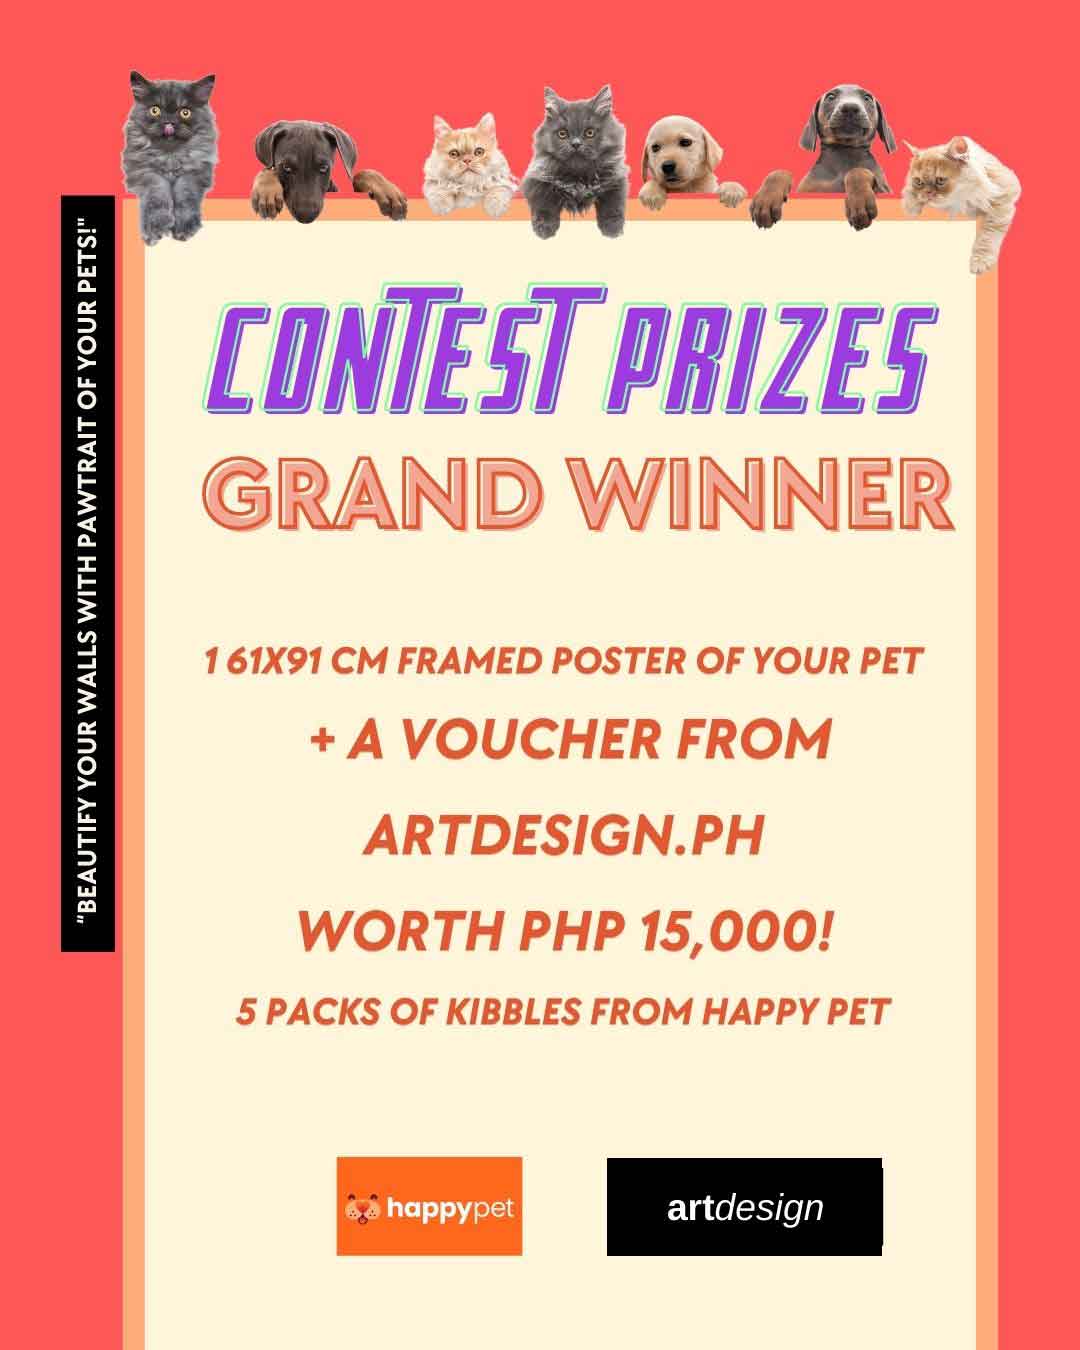 Contest grand prize